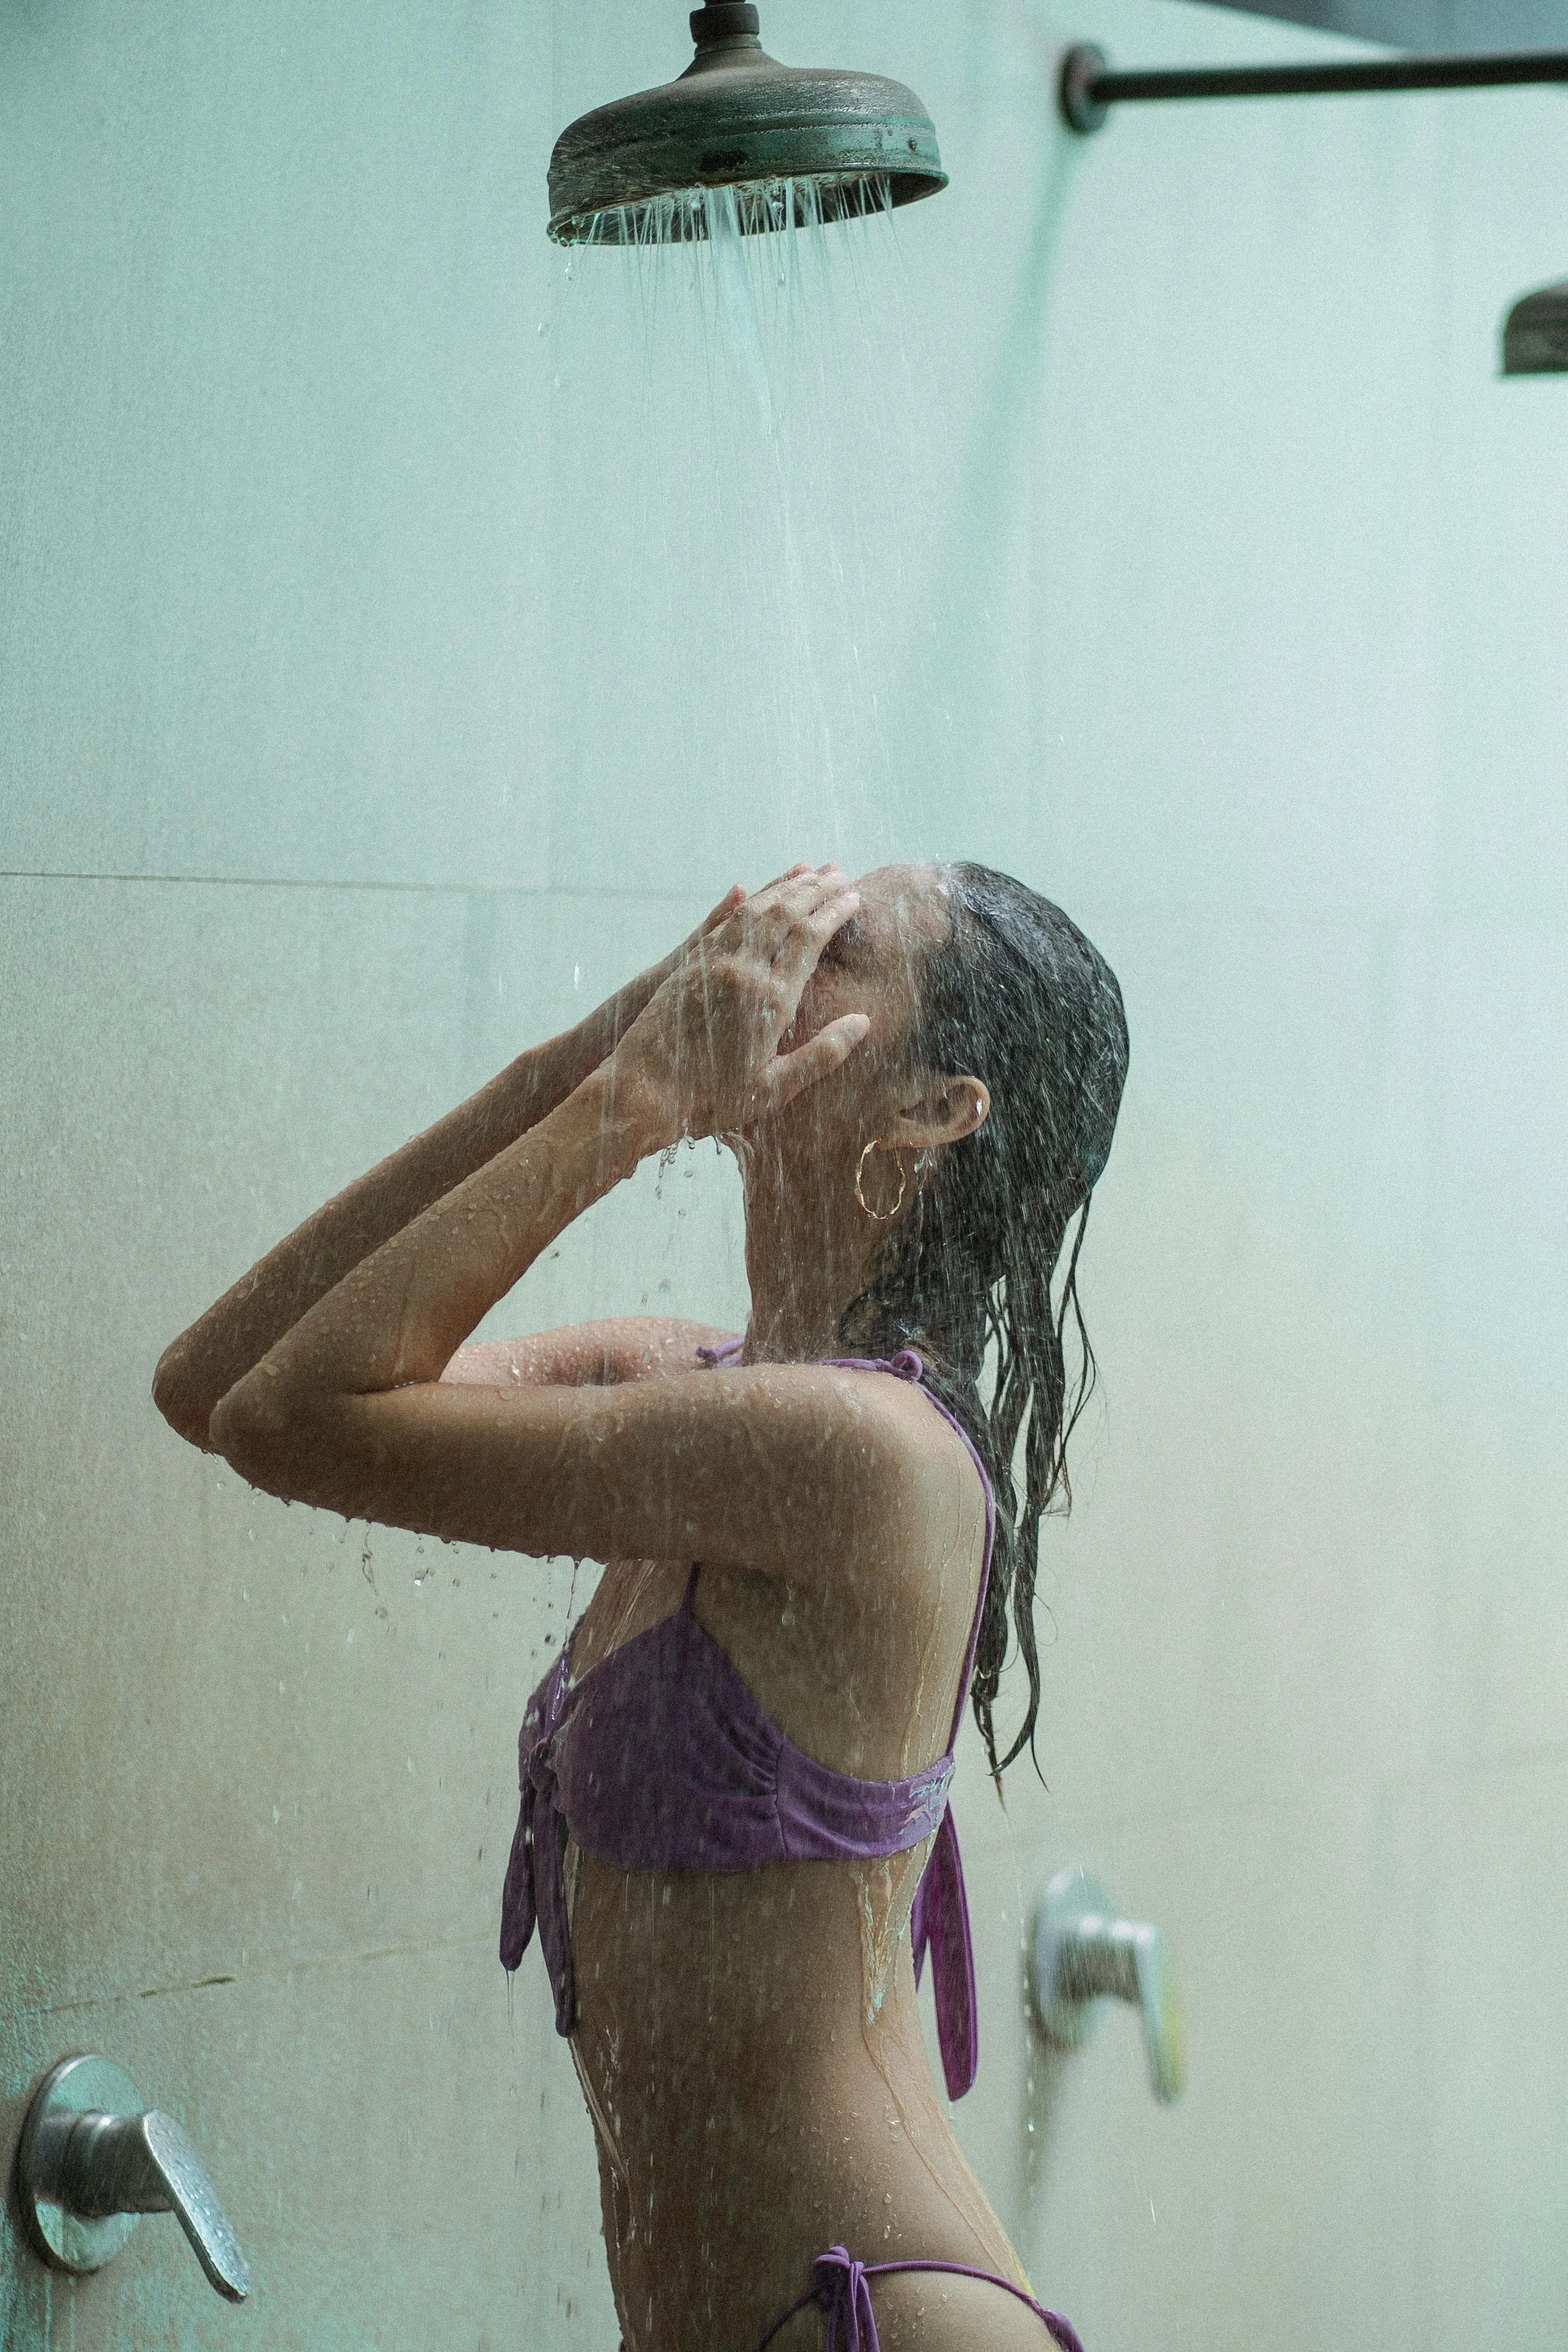 Гарячий душ погано впливає на стан шкіри й волосся